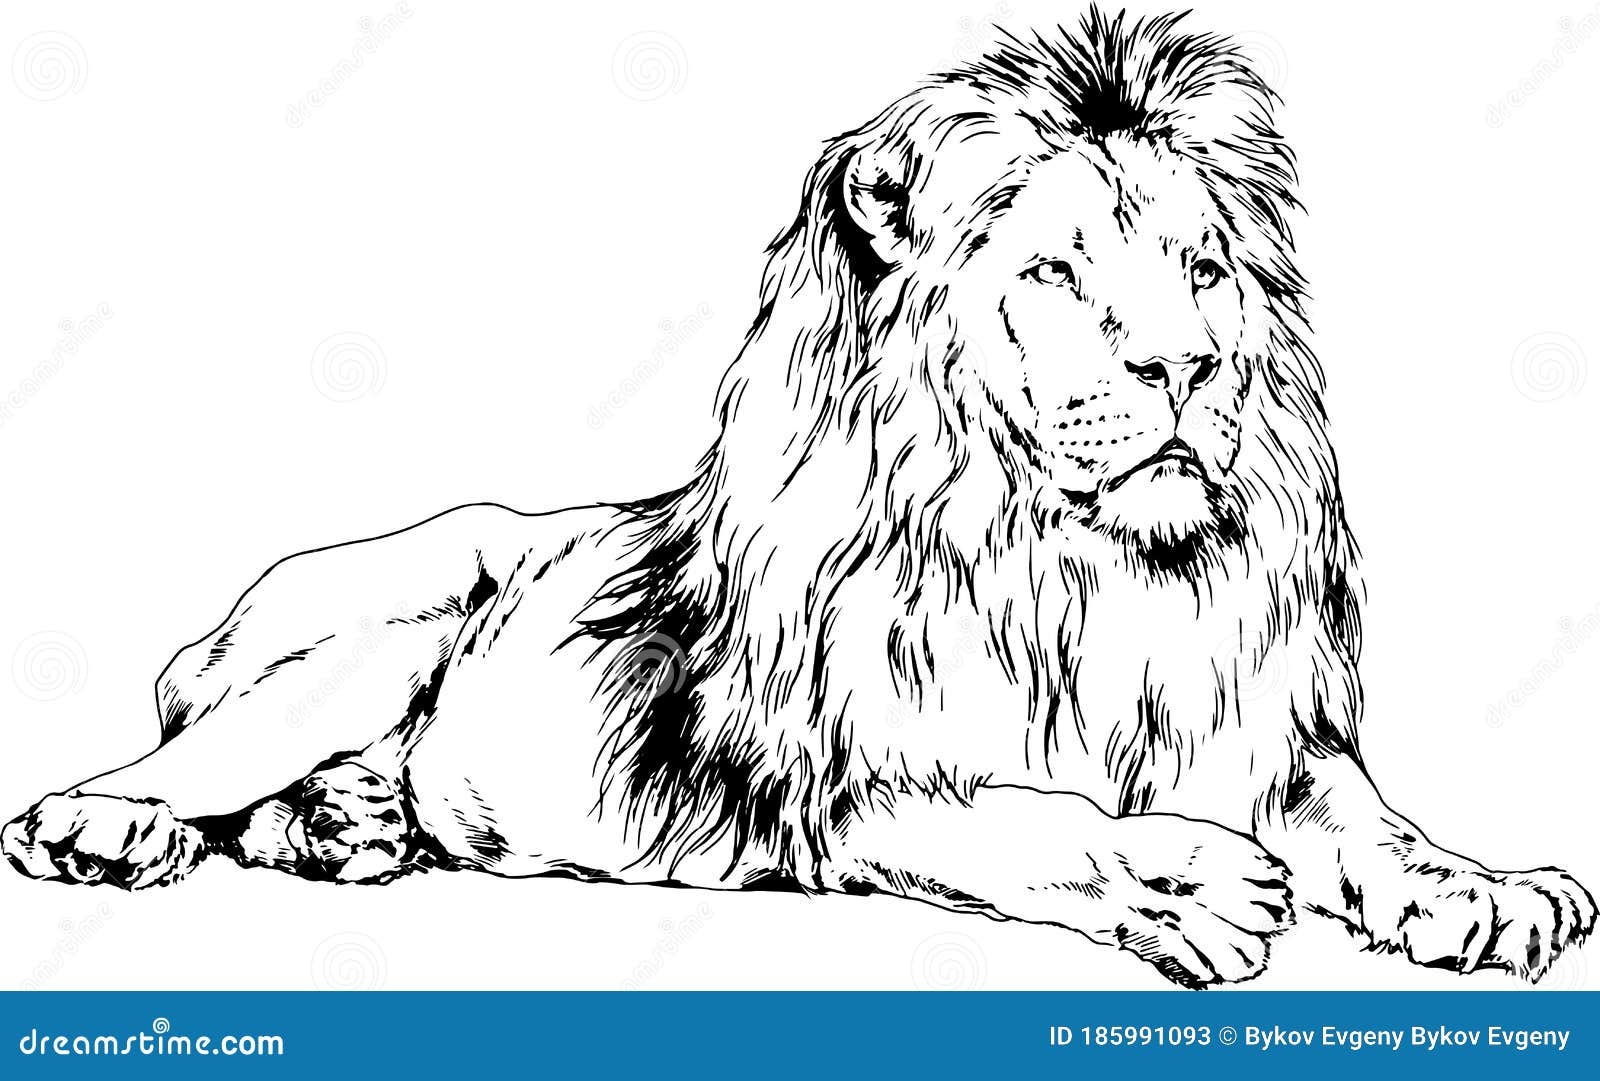 lion drawn ink hands predator tattoo lion drawn ink hands predator tattoo logo 185991093